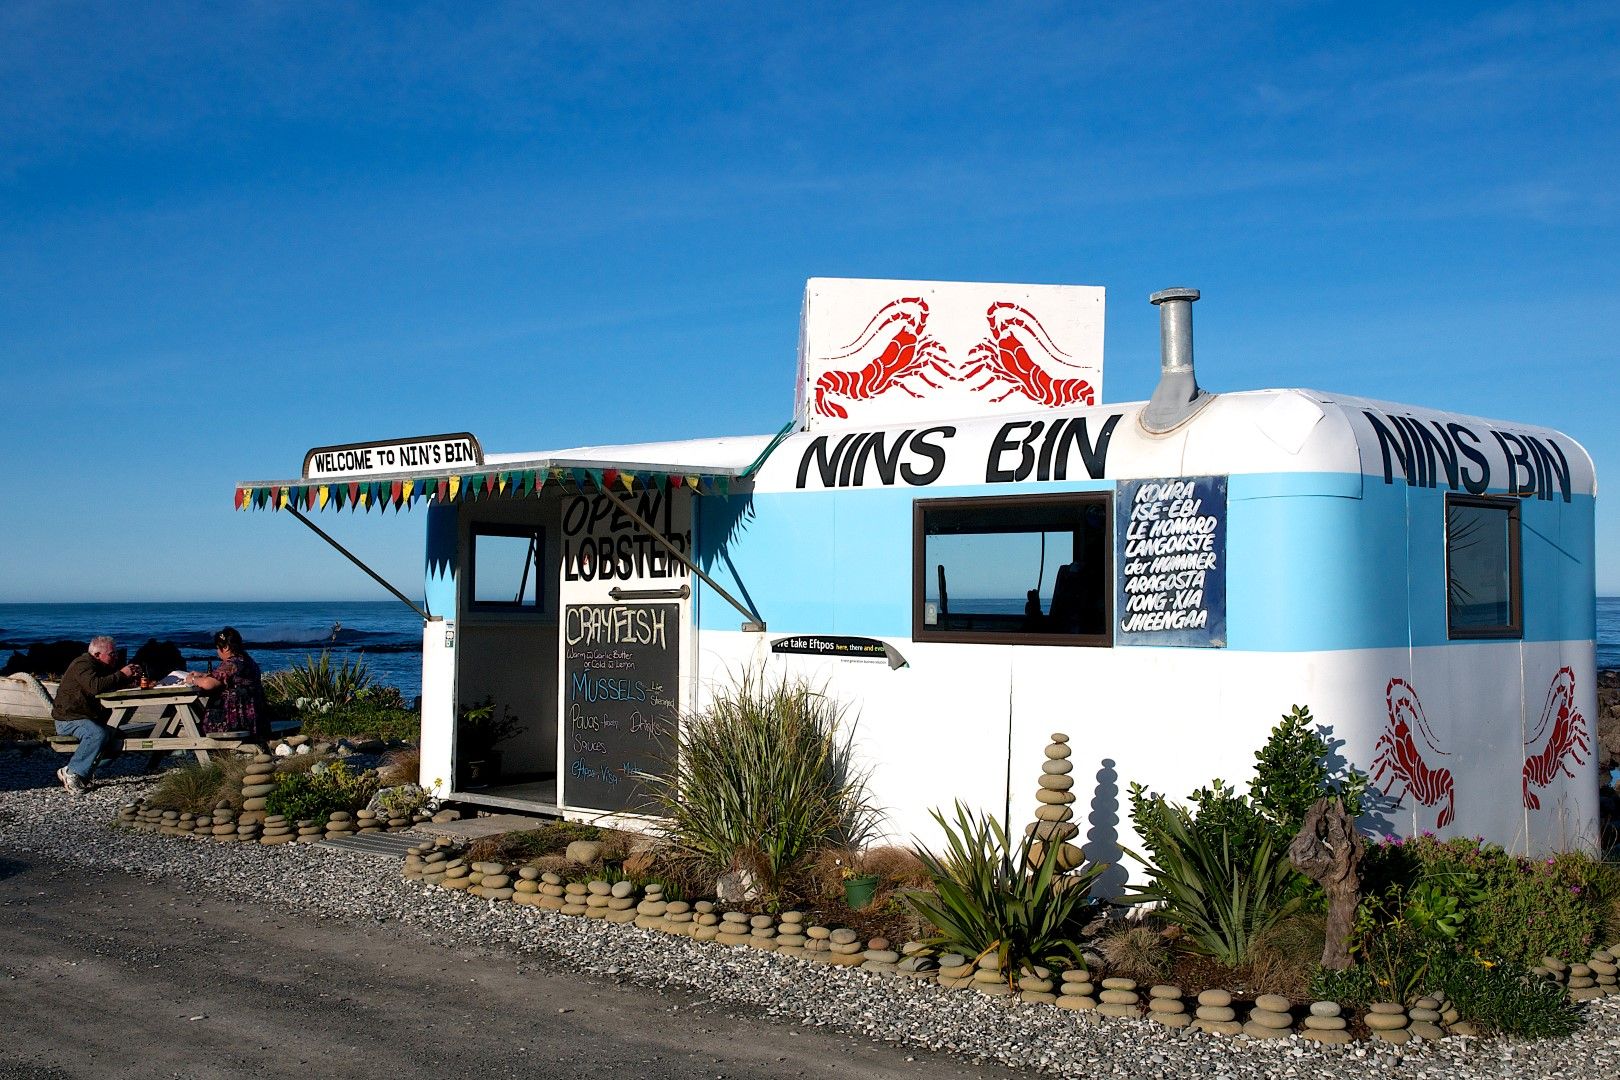 Nin's Bin near Christchurch. Image courtesy kaikouranz.co.nz